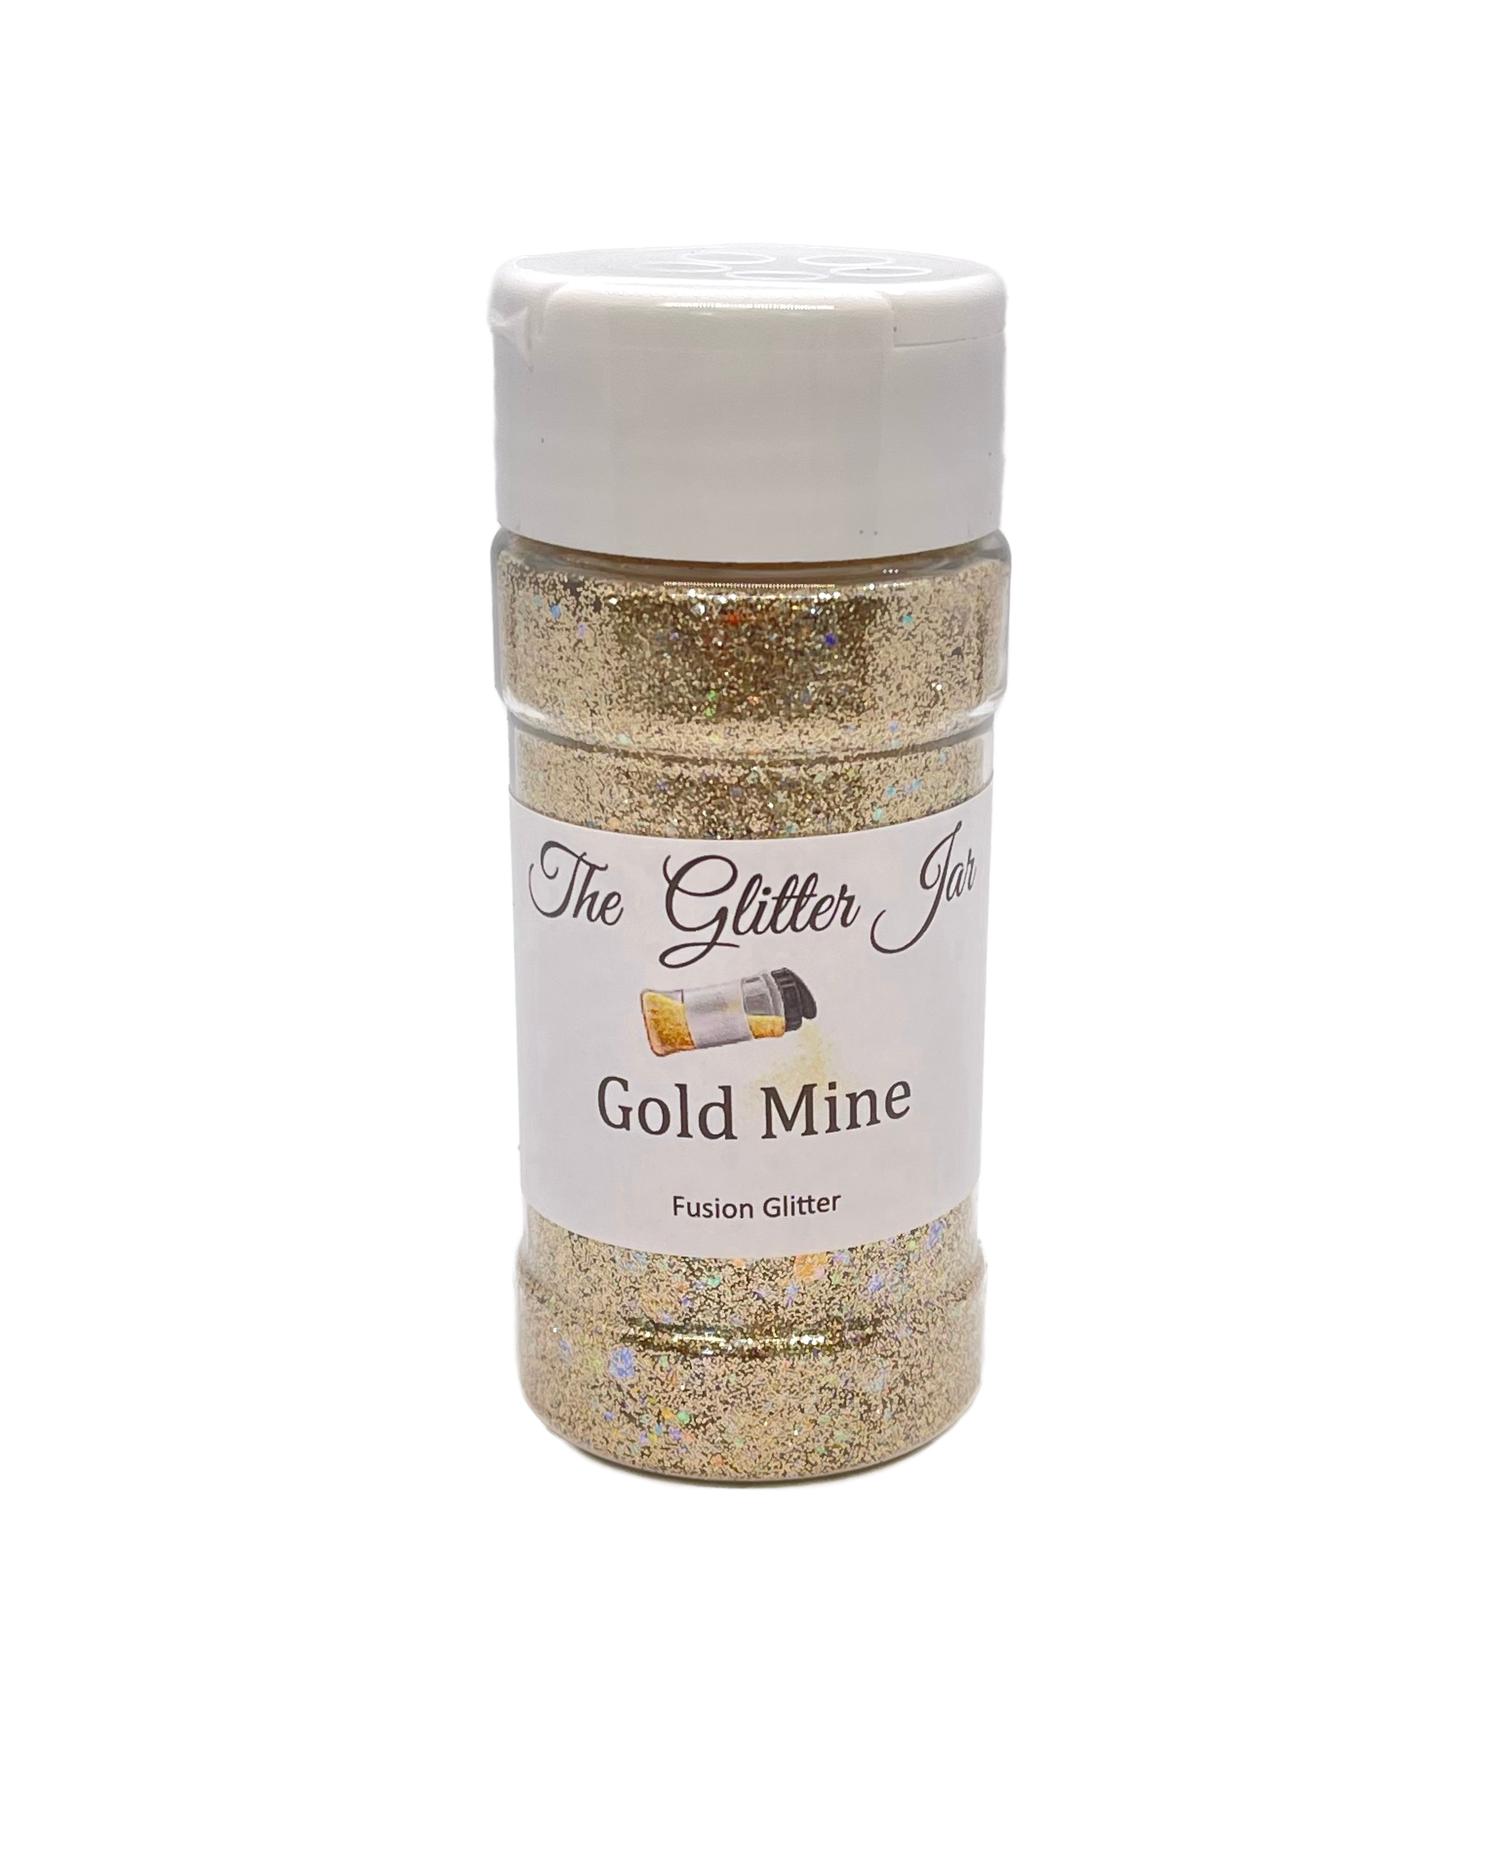 Gold Mine Fusion Glitter The Glitter Jar